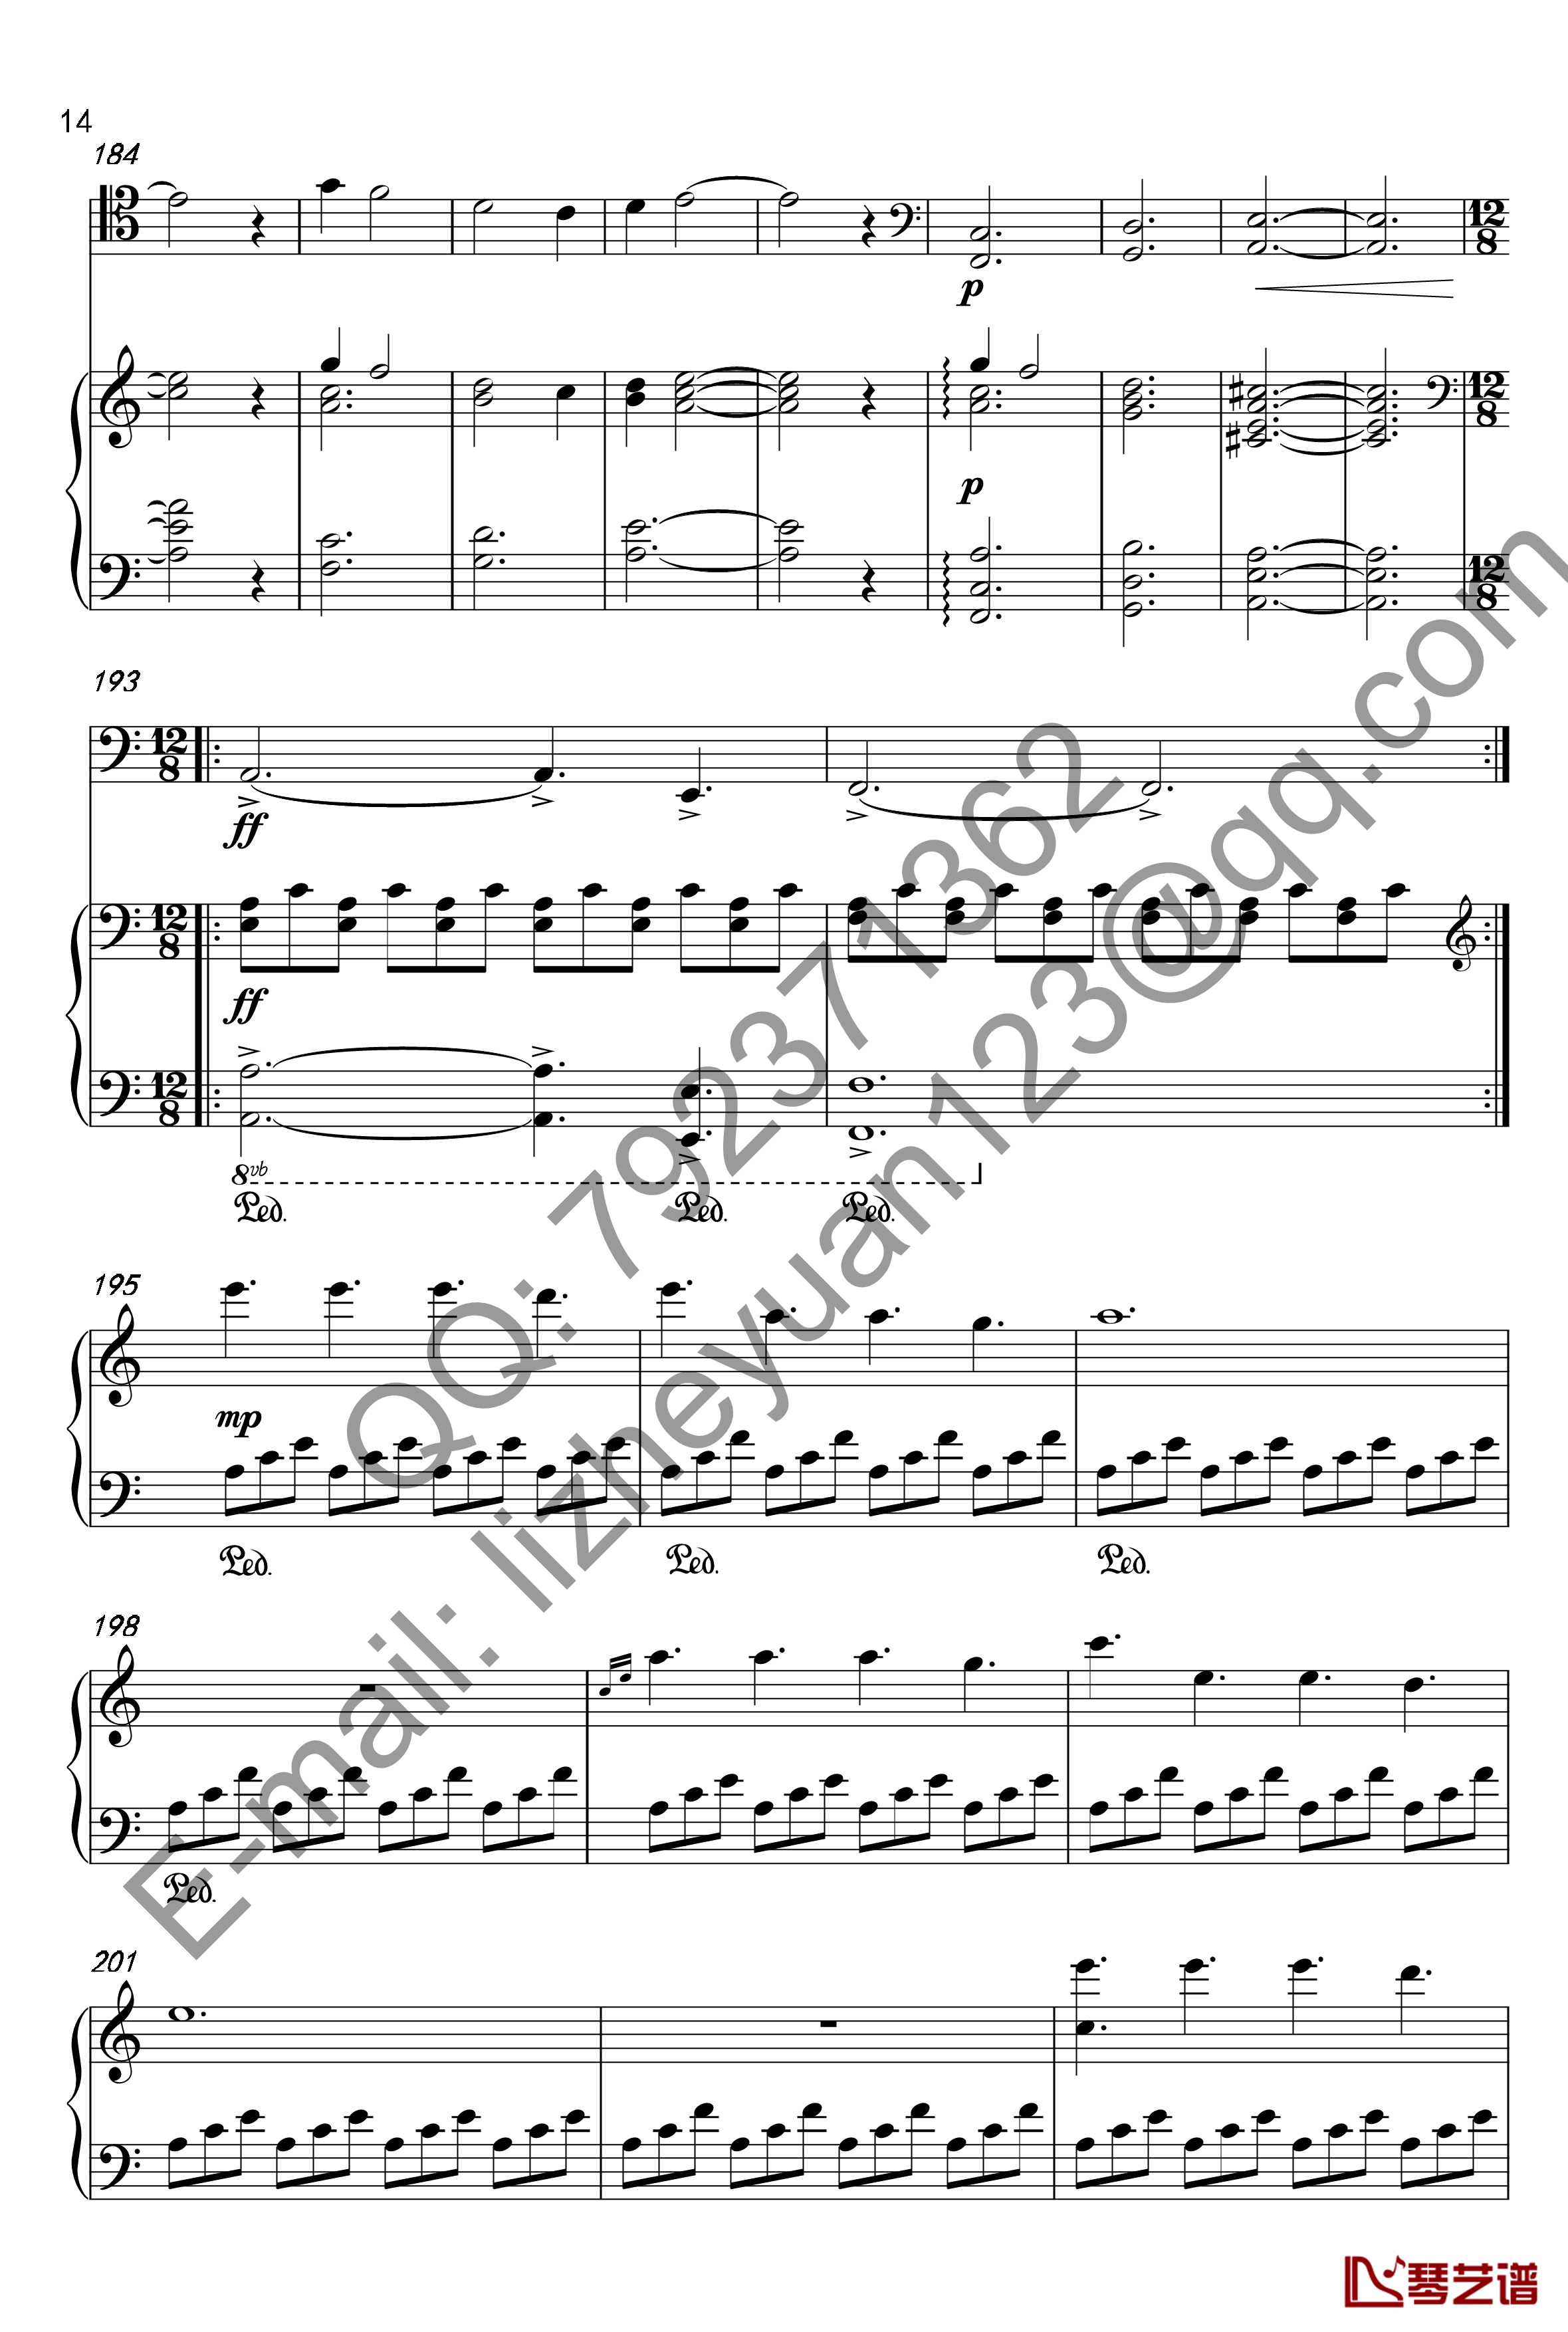 唐顿庄园主题曲钢琴谱-钢琴+大提琴-唐顿庄园14